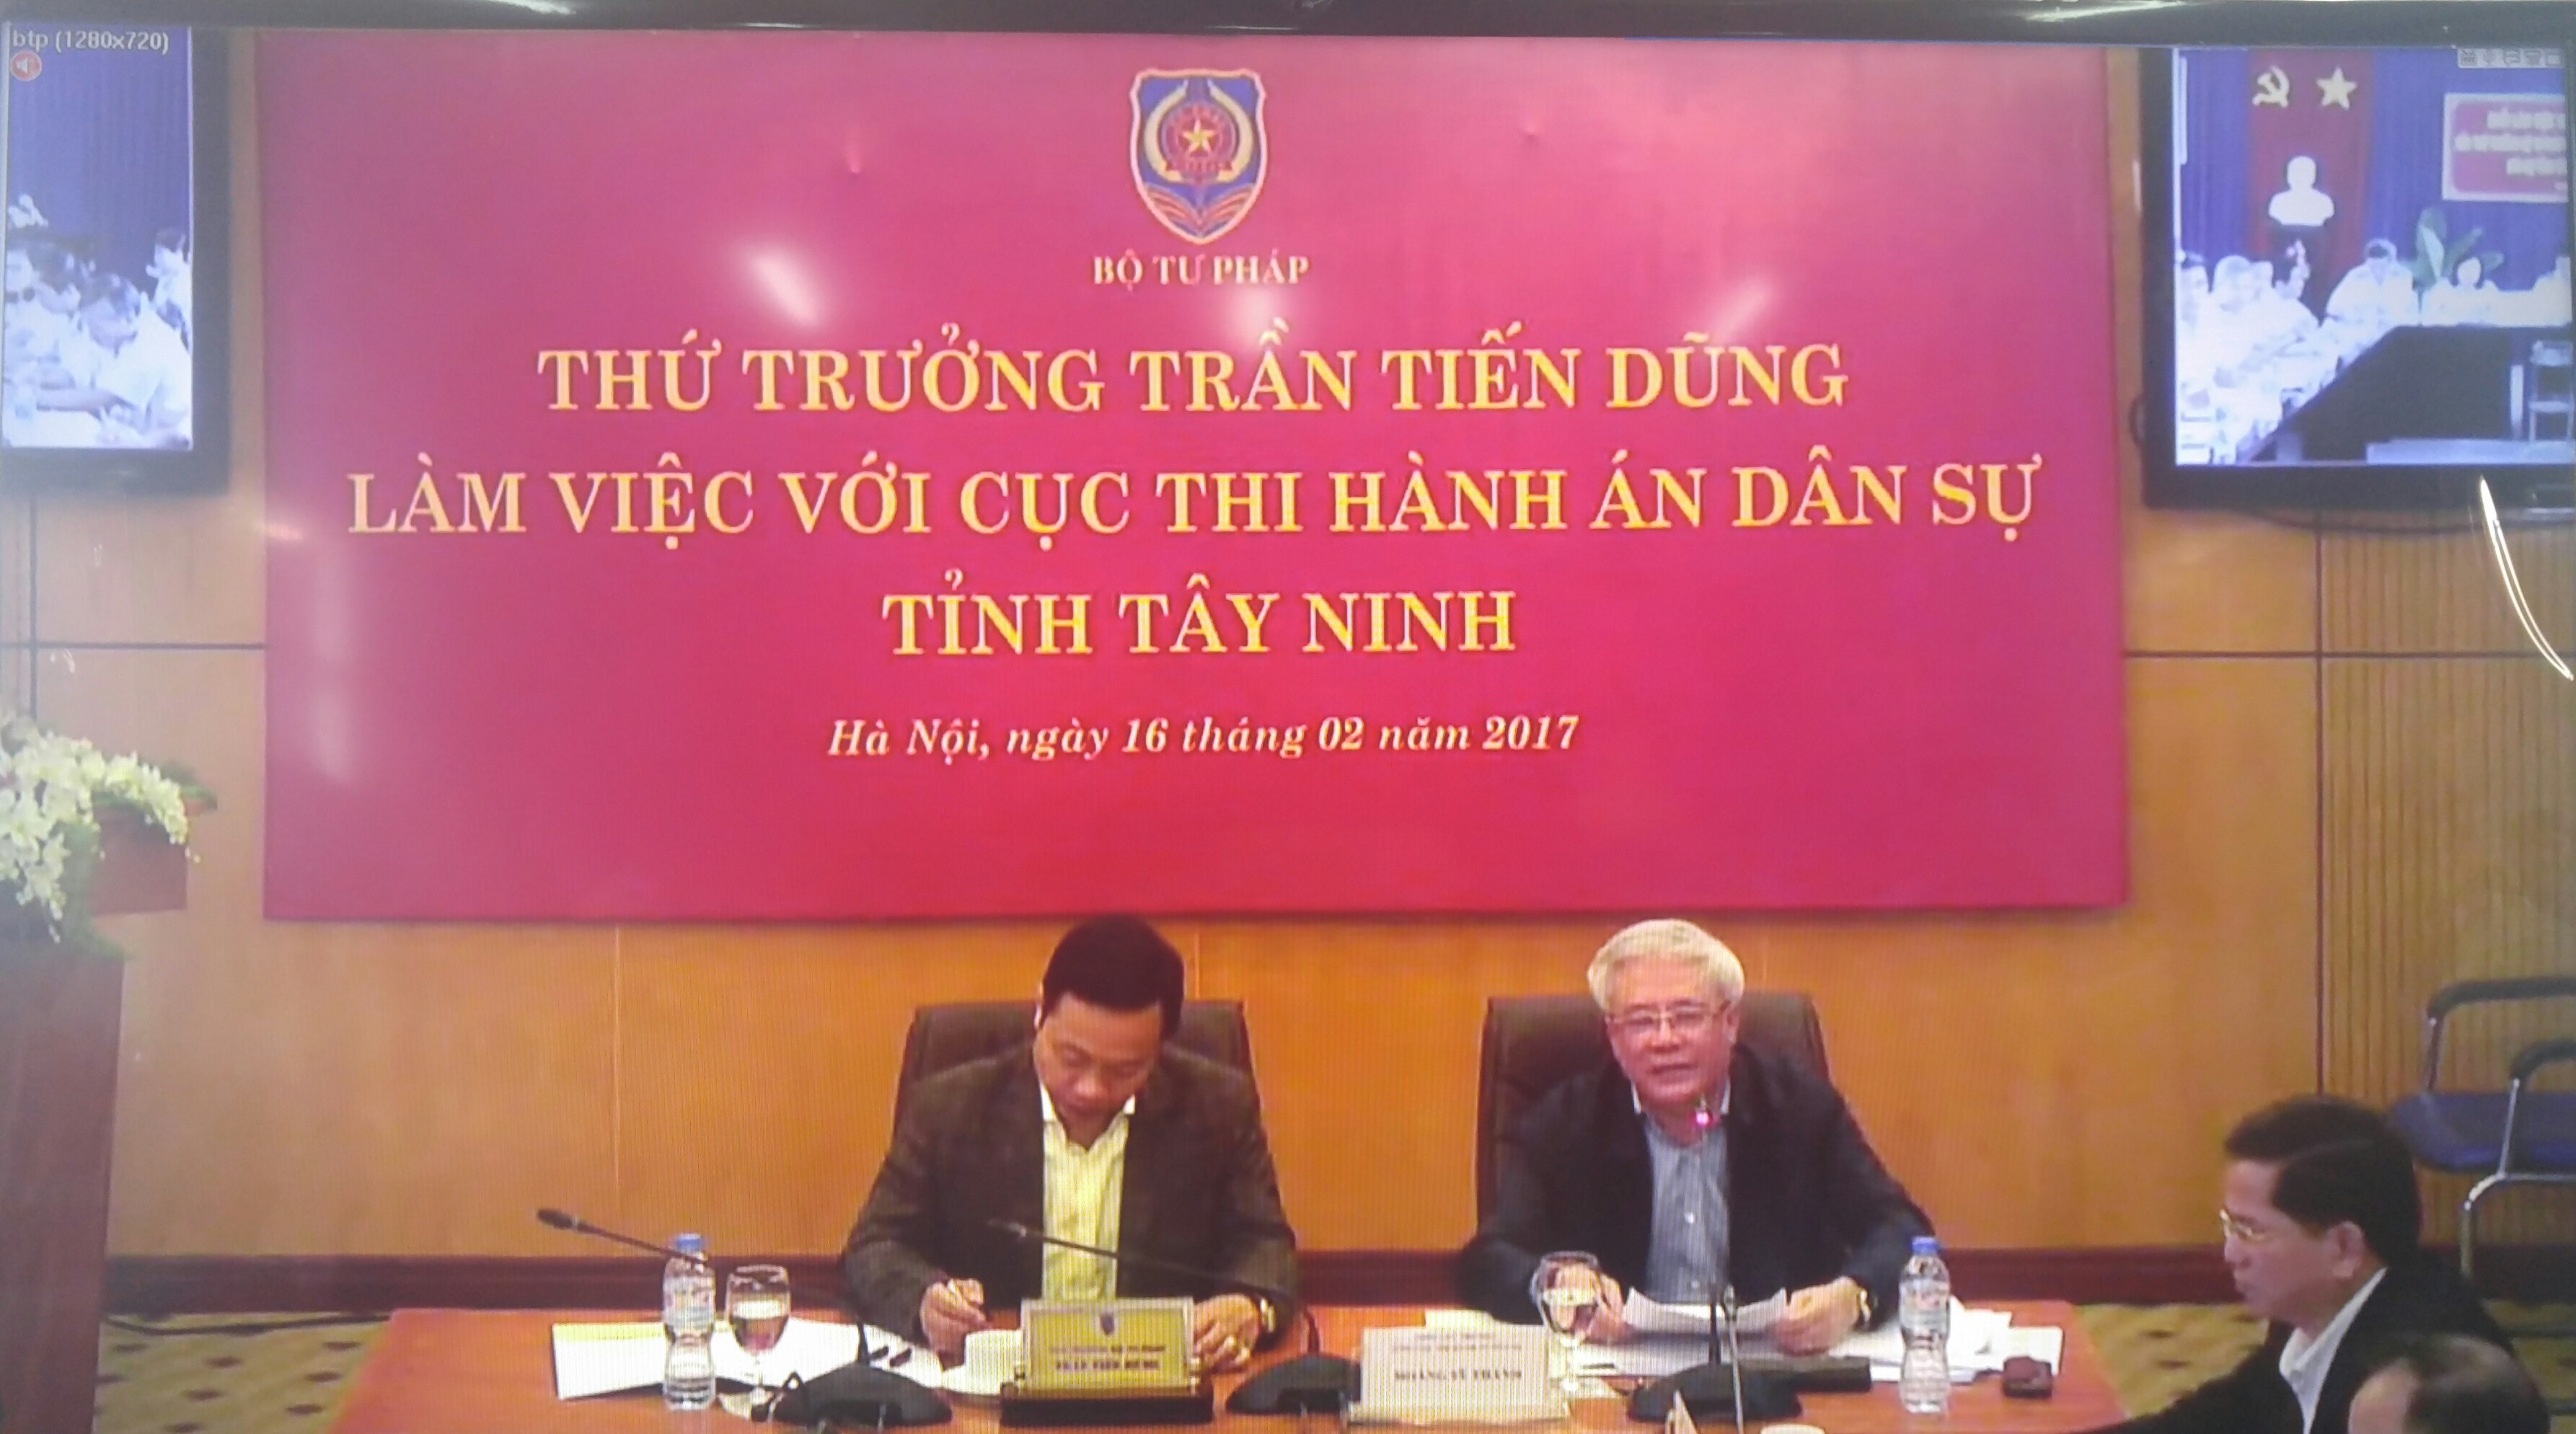 Thứ trưởng Bộ Tư pháp làm việc trực tuyến với Cục Thi hành án dân sự tỉnh Tây Ninh